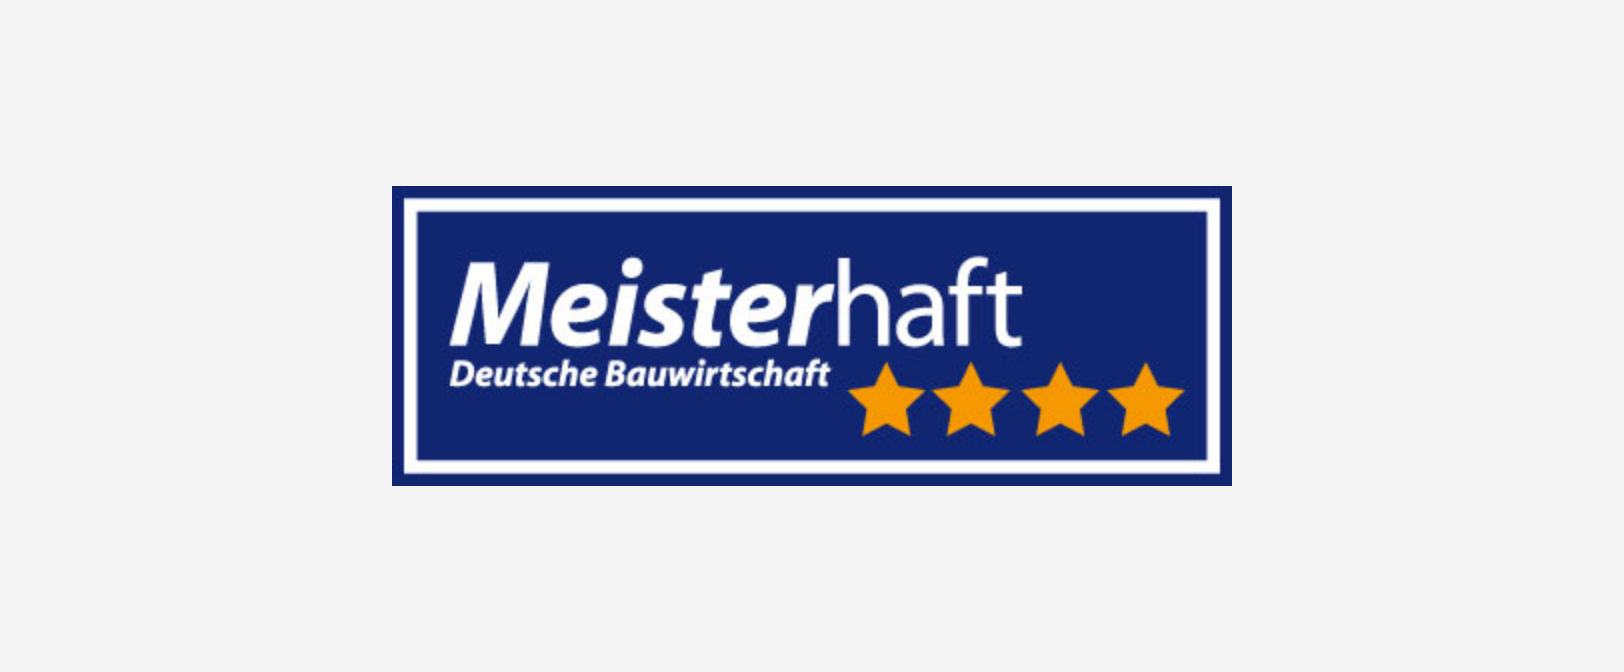 Meisterhaft Logo Deutsche Bauwirtschaft 4 Sterne